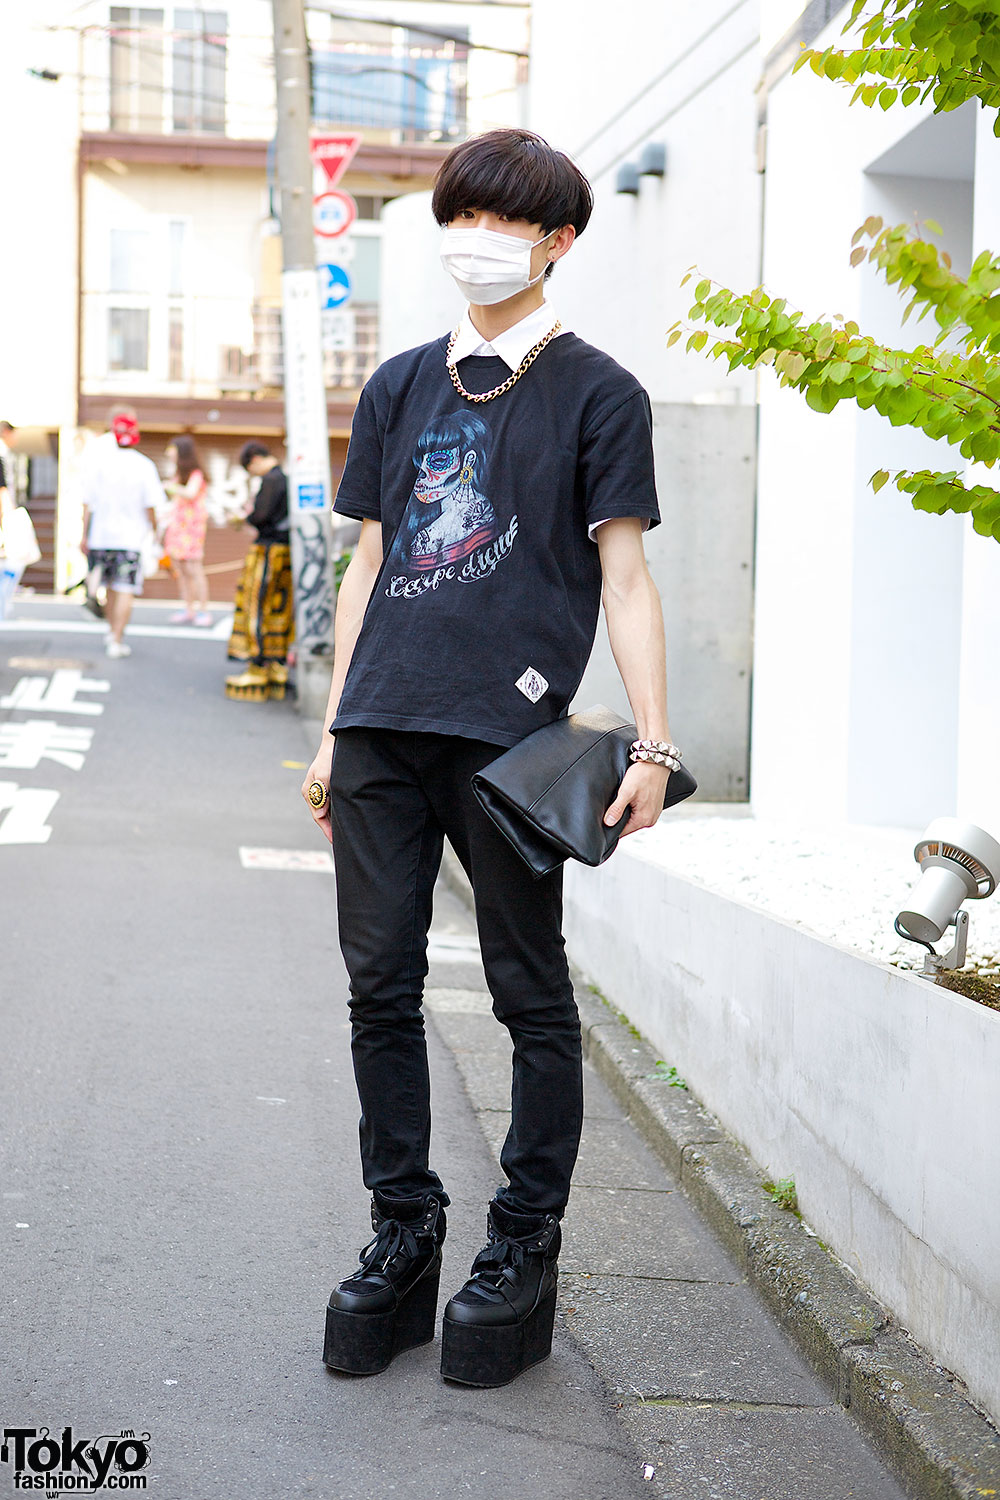 Harajuku Guy w/ Carpe Diem T-Shirt, YRU Flatforms, Skinny Jeans & Clutch